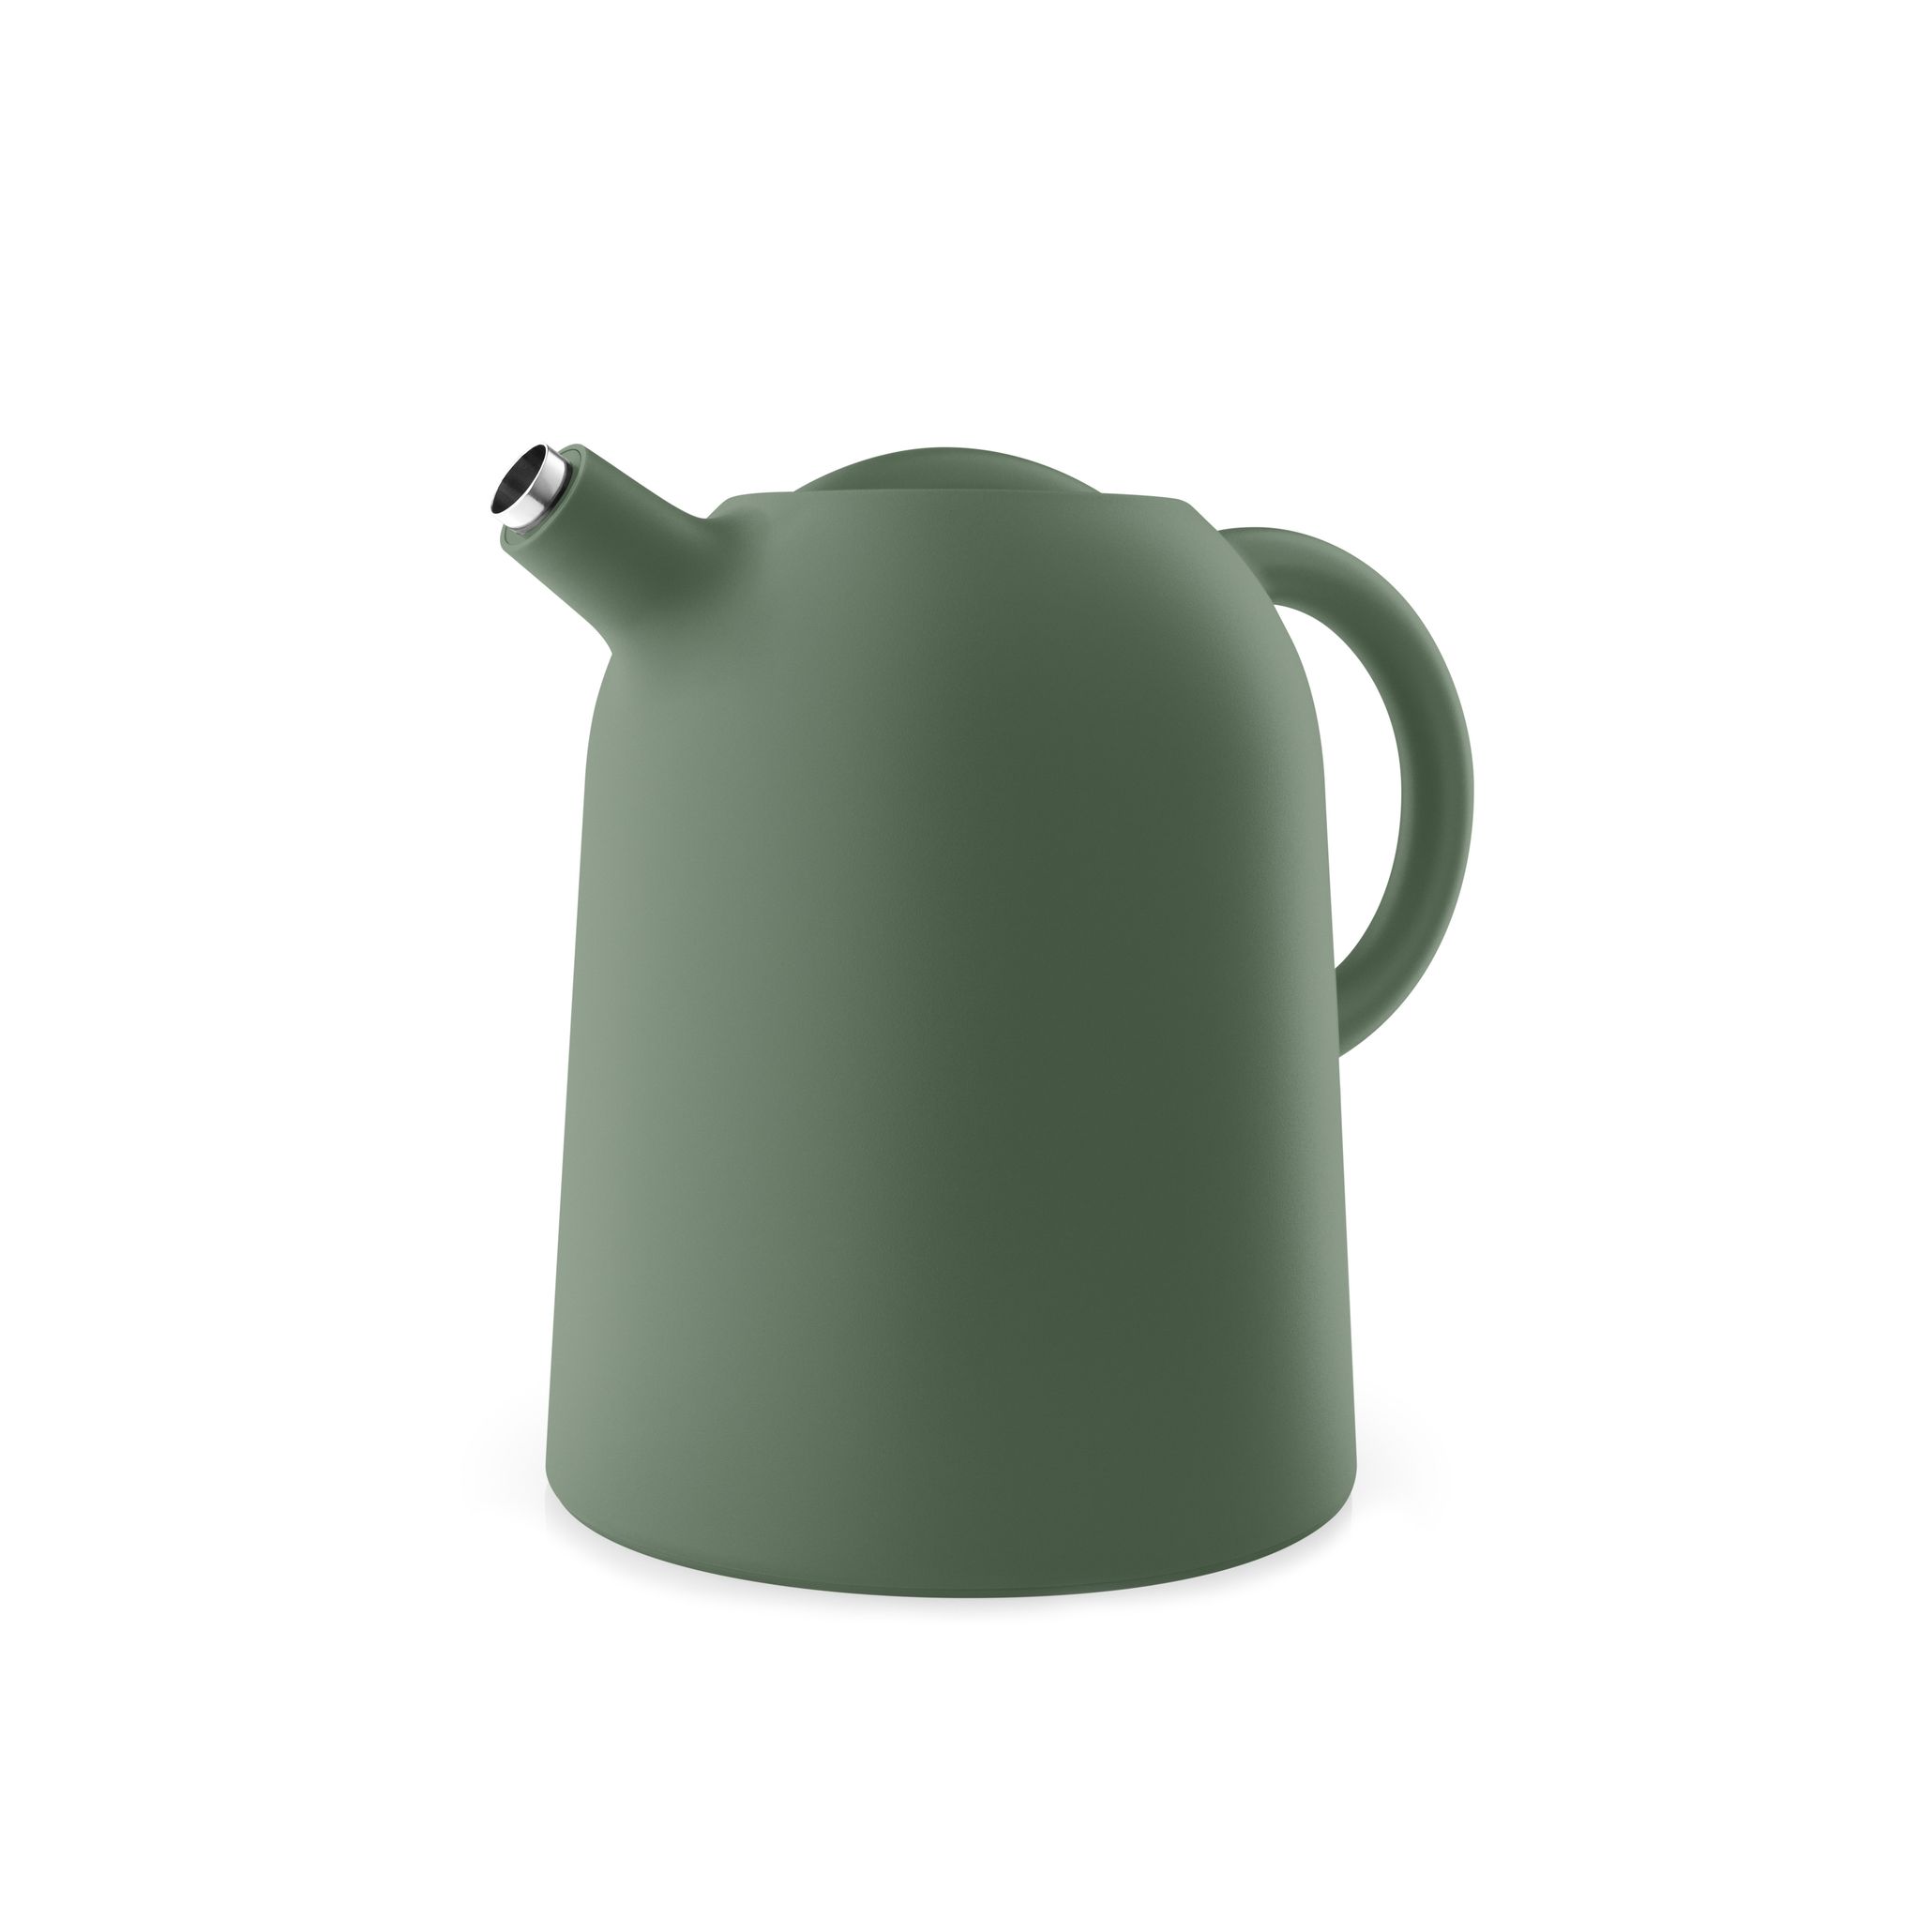 Eva Solo - Thimble vacuum jug, 1 L - Green (502714)